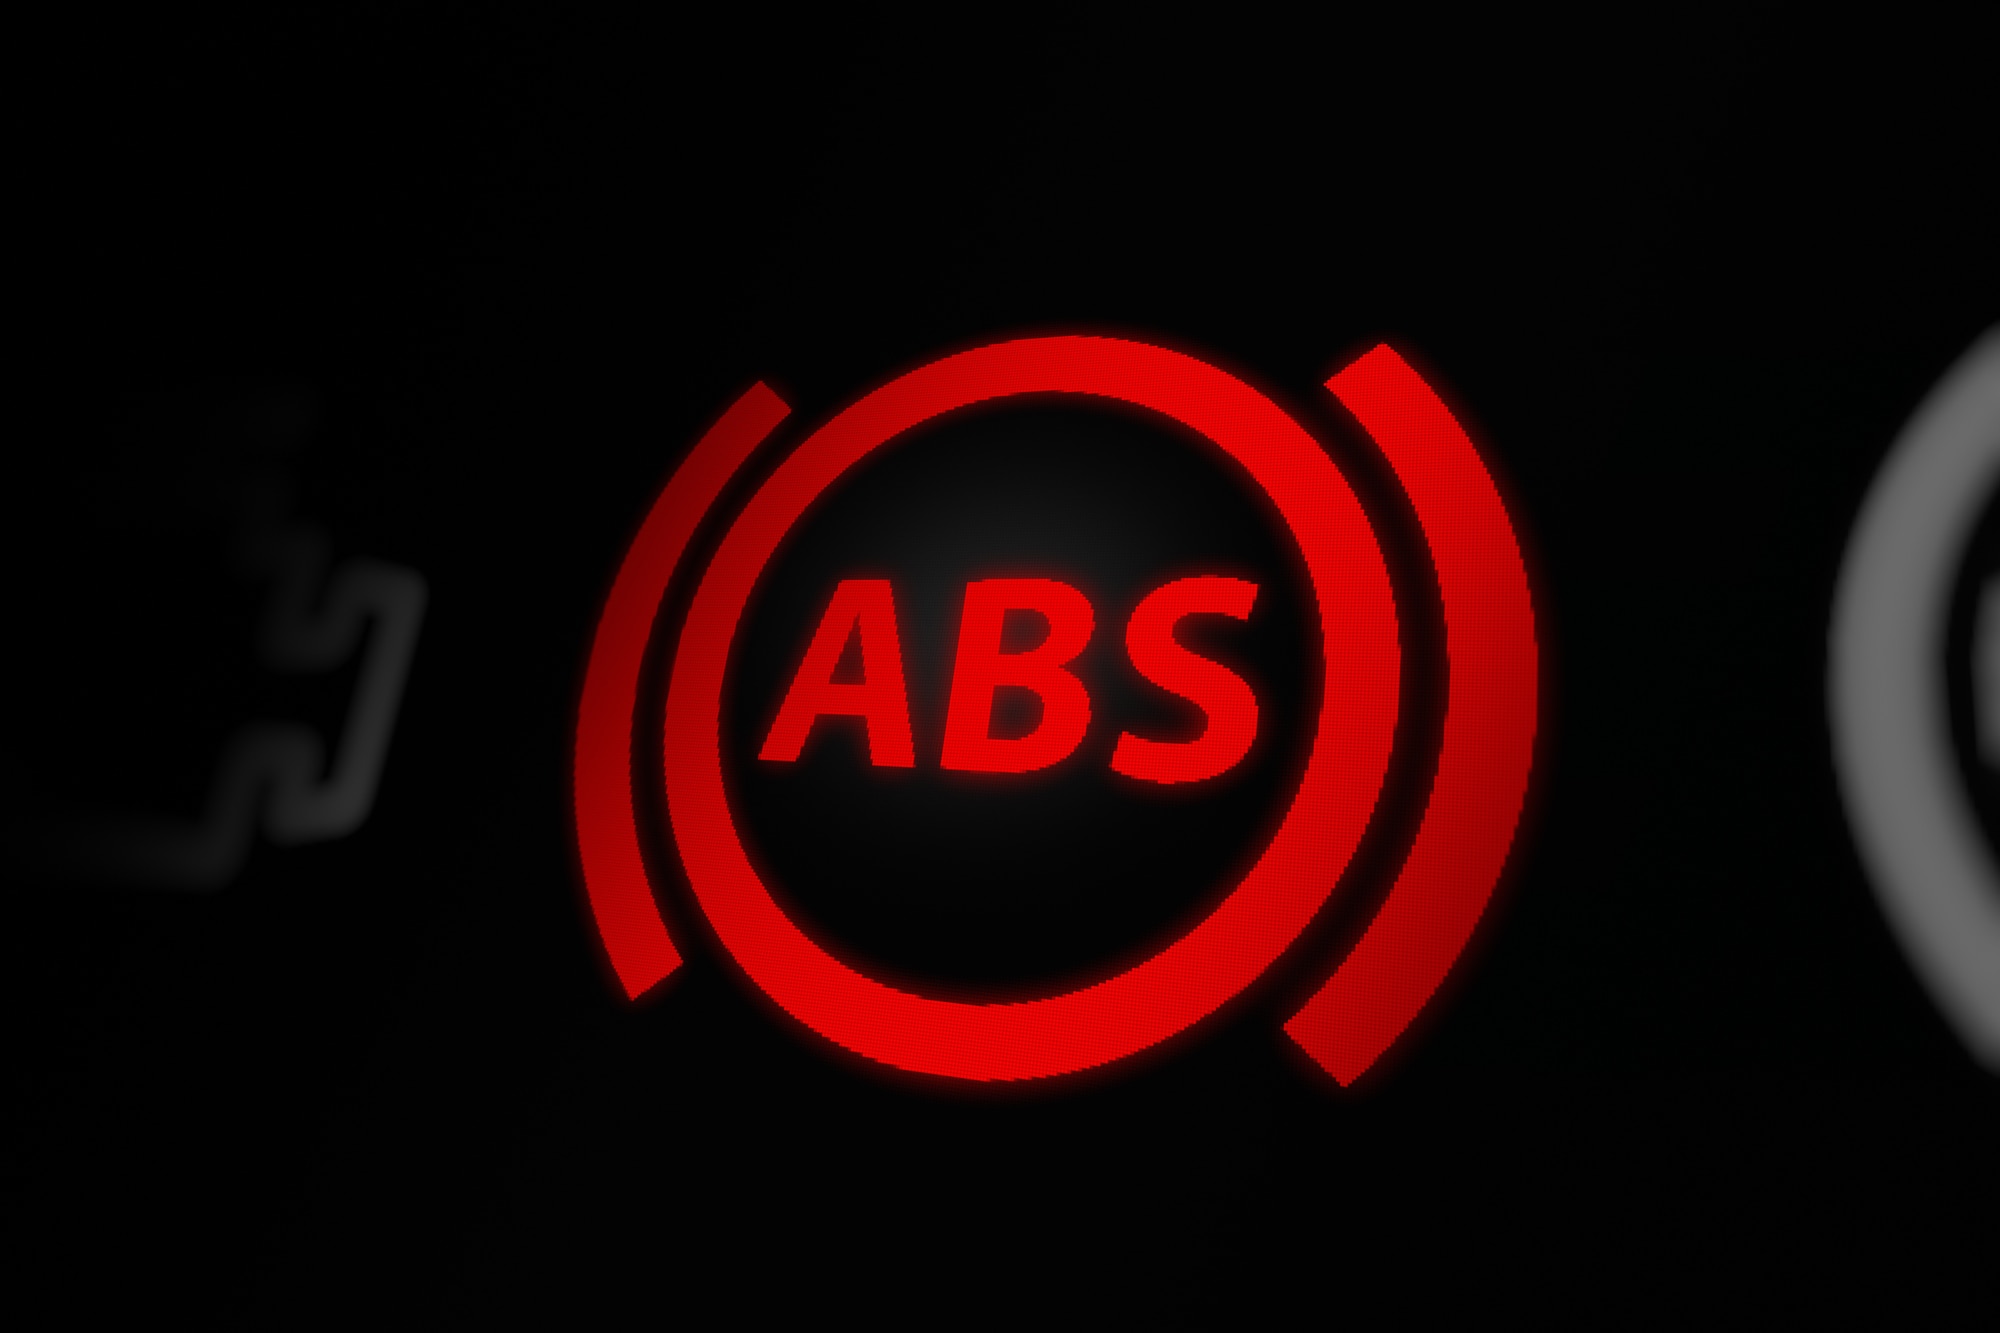 Anti-Lock Braking System (ABS) warning light on car dashboard